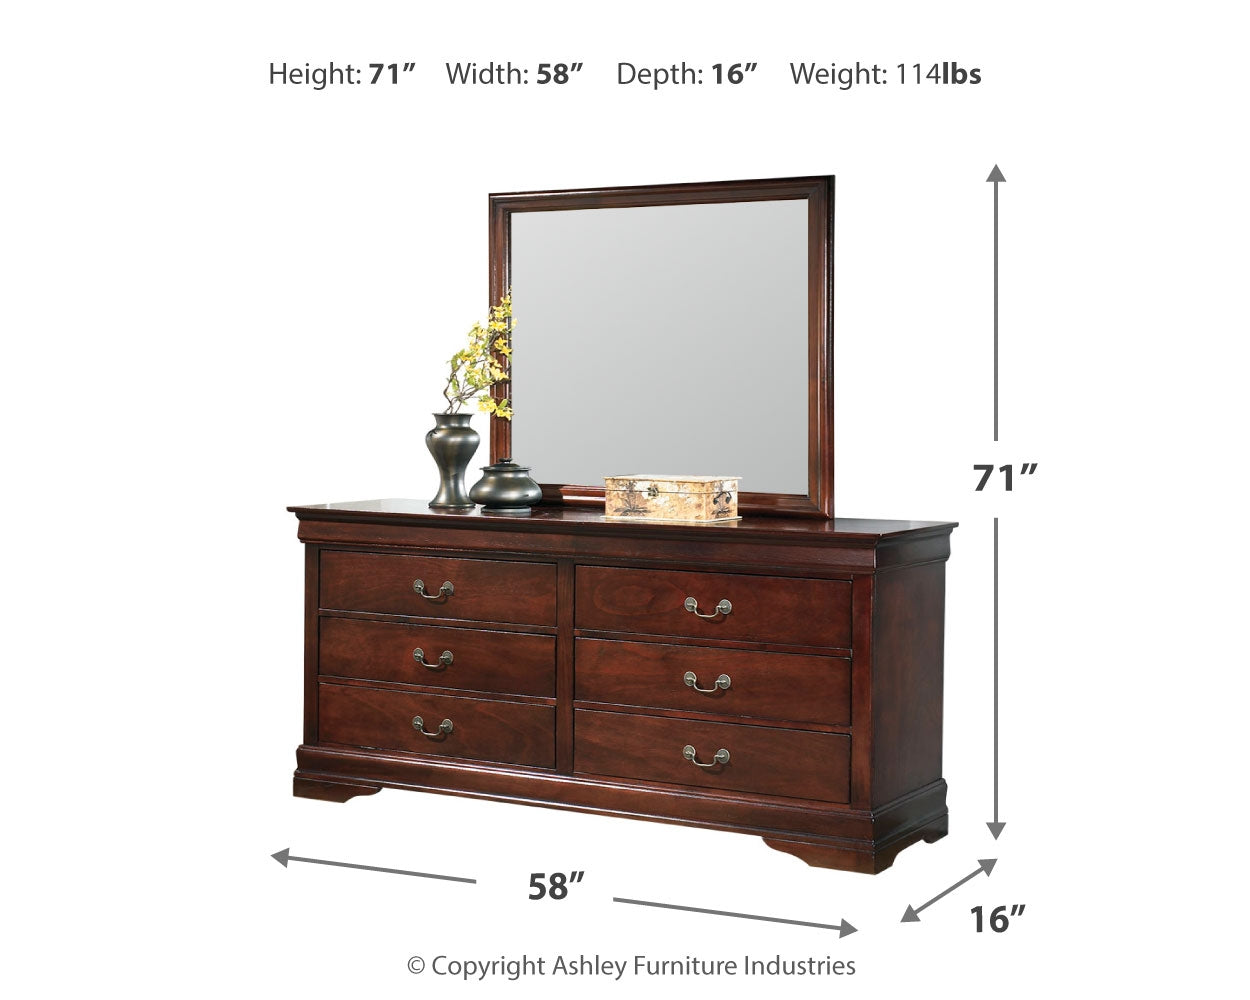 Alisdair Queen Sleigh Bedroom Set with Dresser, Mirror, Chest and 2 Nightstands